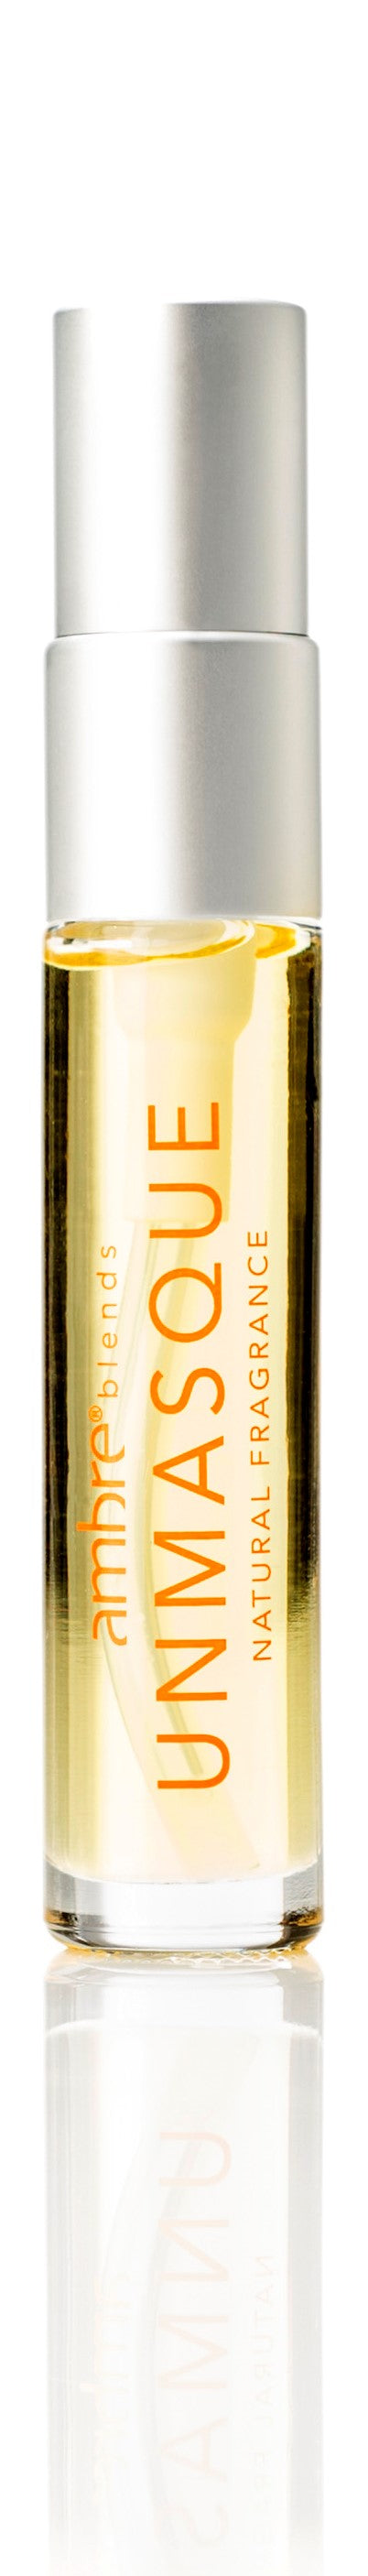 Unmasque Pure Essence Oil (30ml) – Ambre Blends